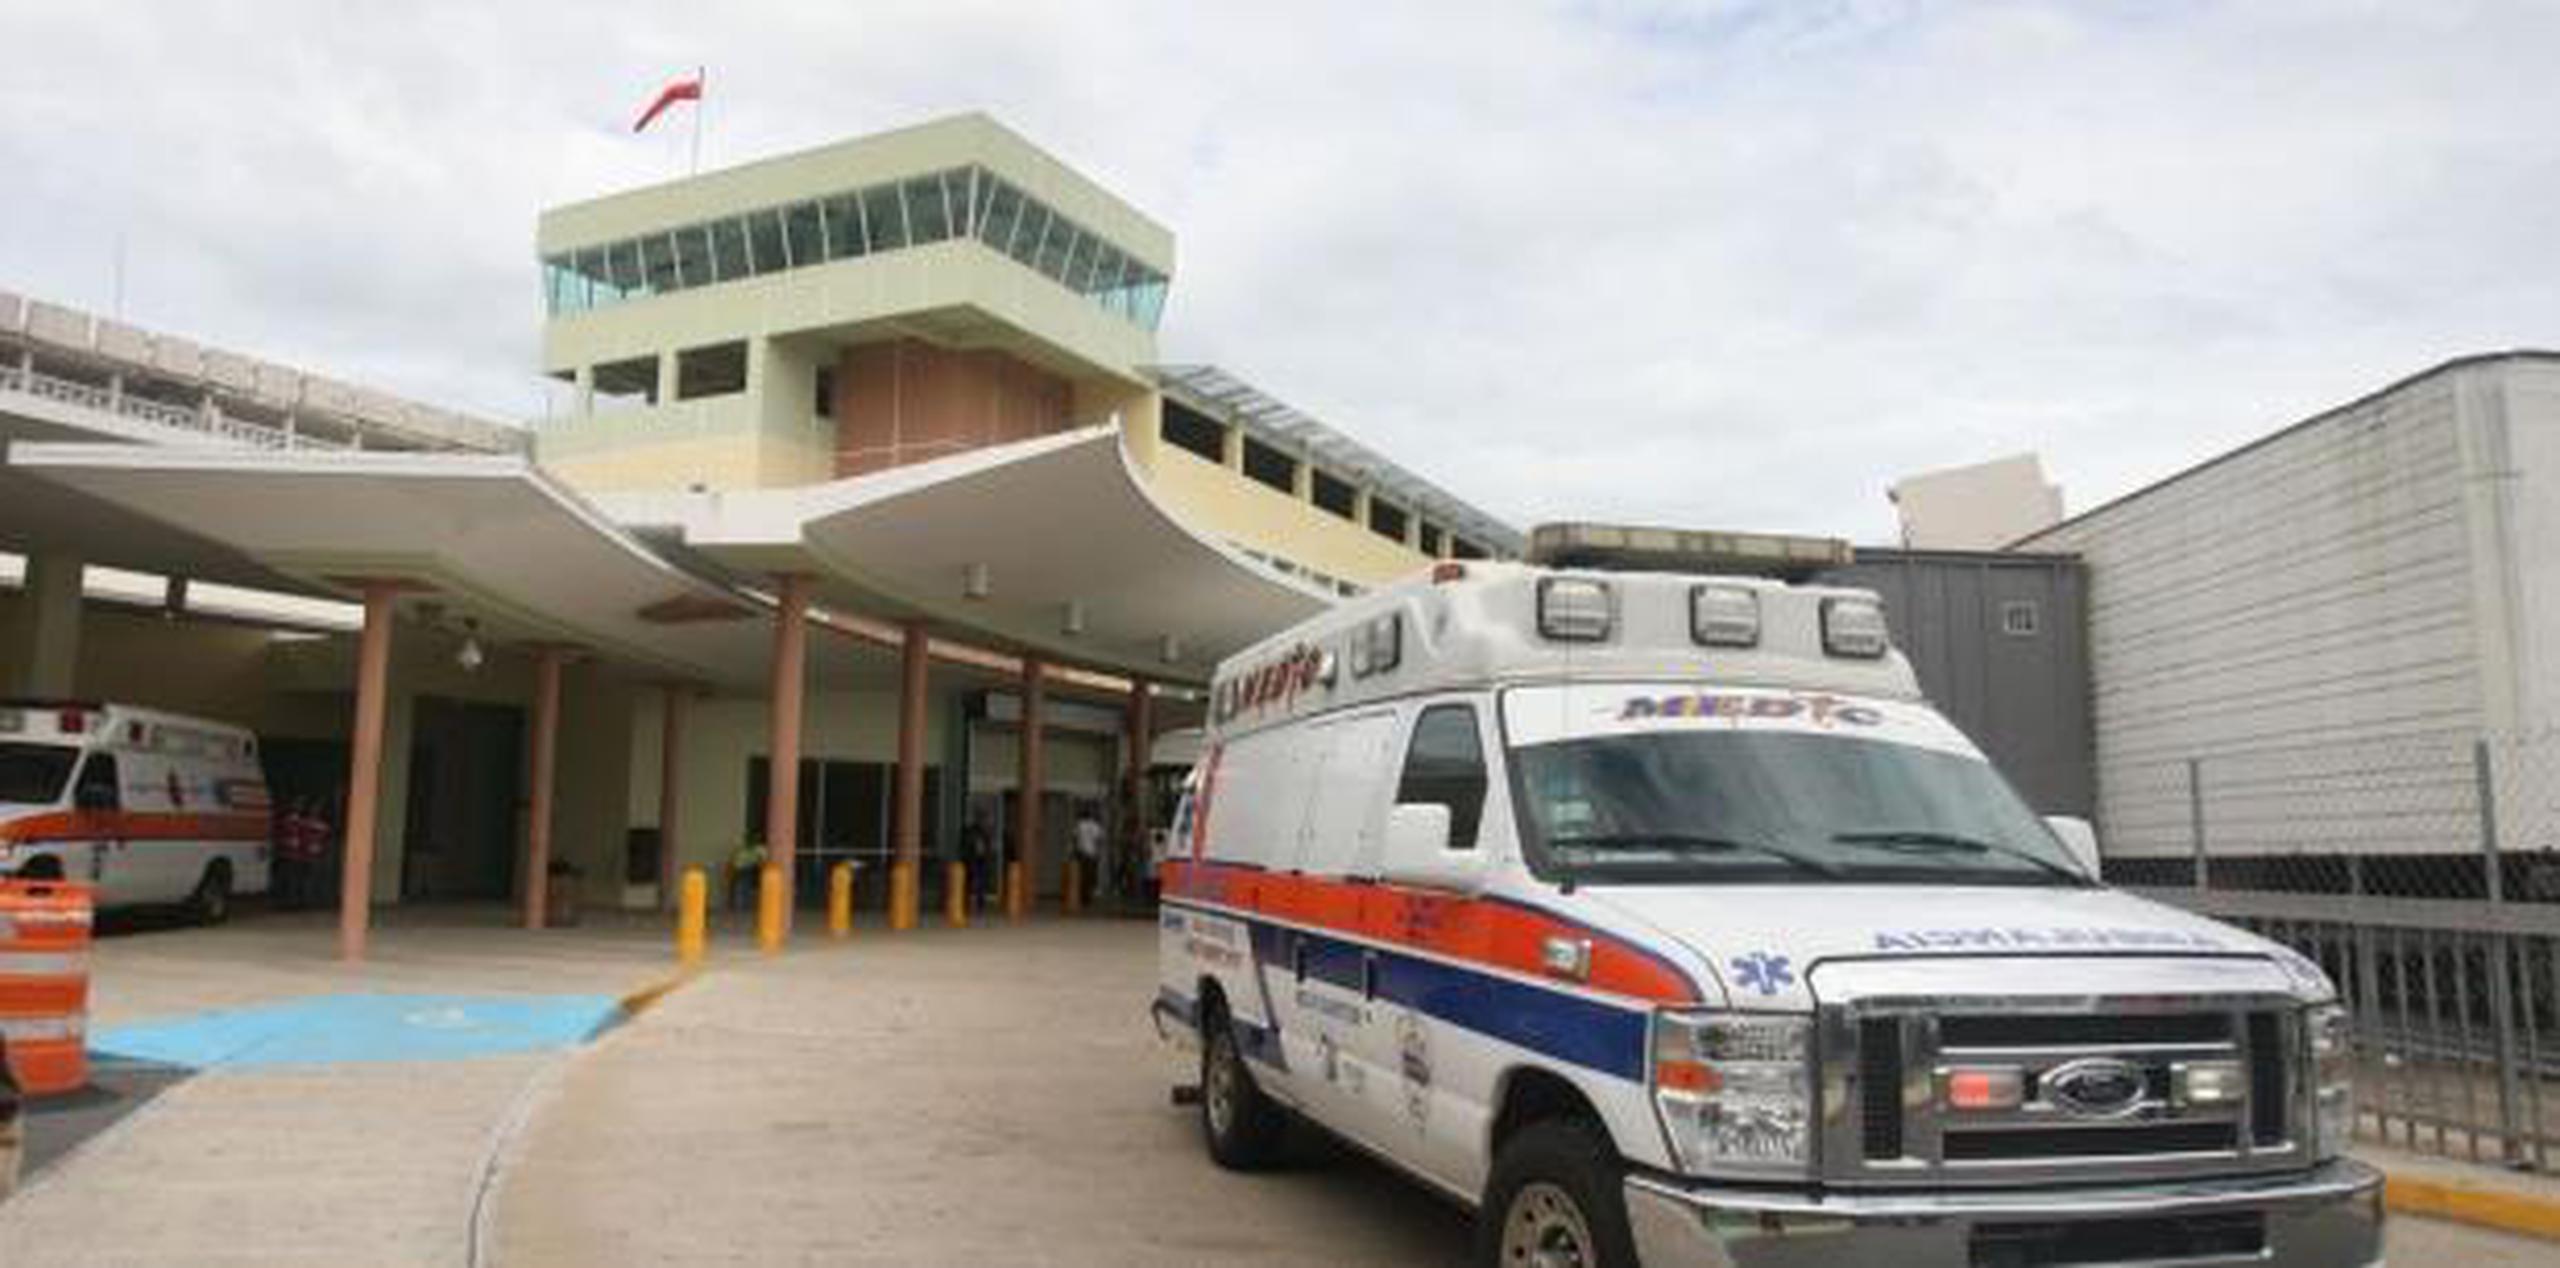 La alcaldesa dijo que “no se afectan los servicios a la ciudadanía de San Juan” porque algunas de las 10 salas del hospital “no se estaban usando a toda capacidad”. (Archivo)